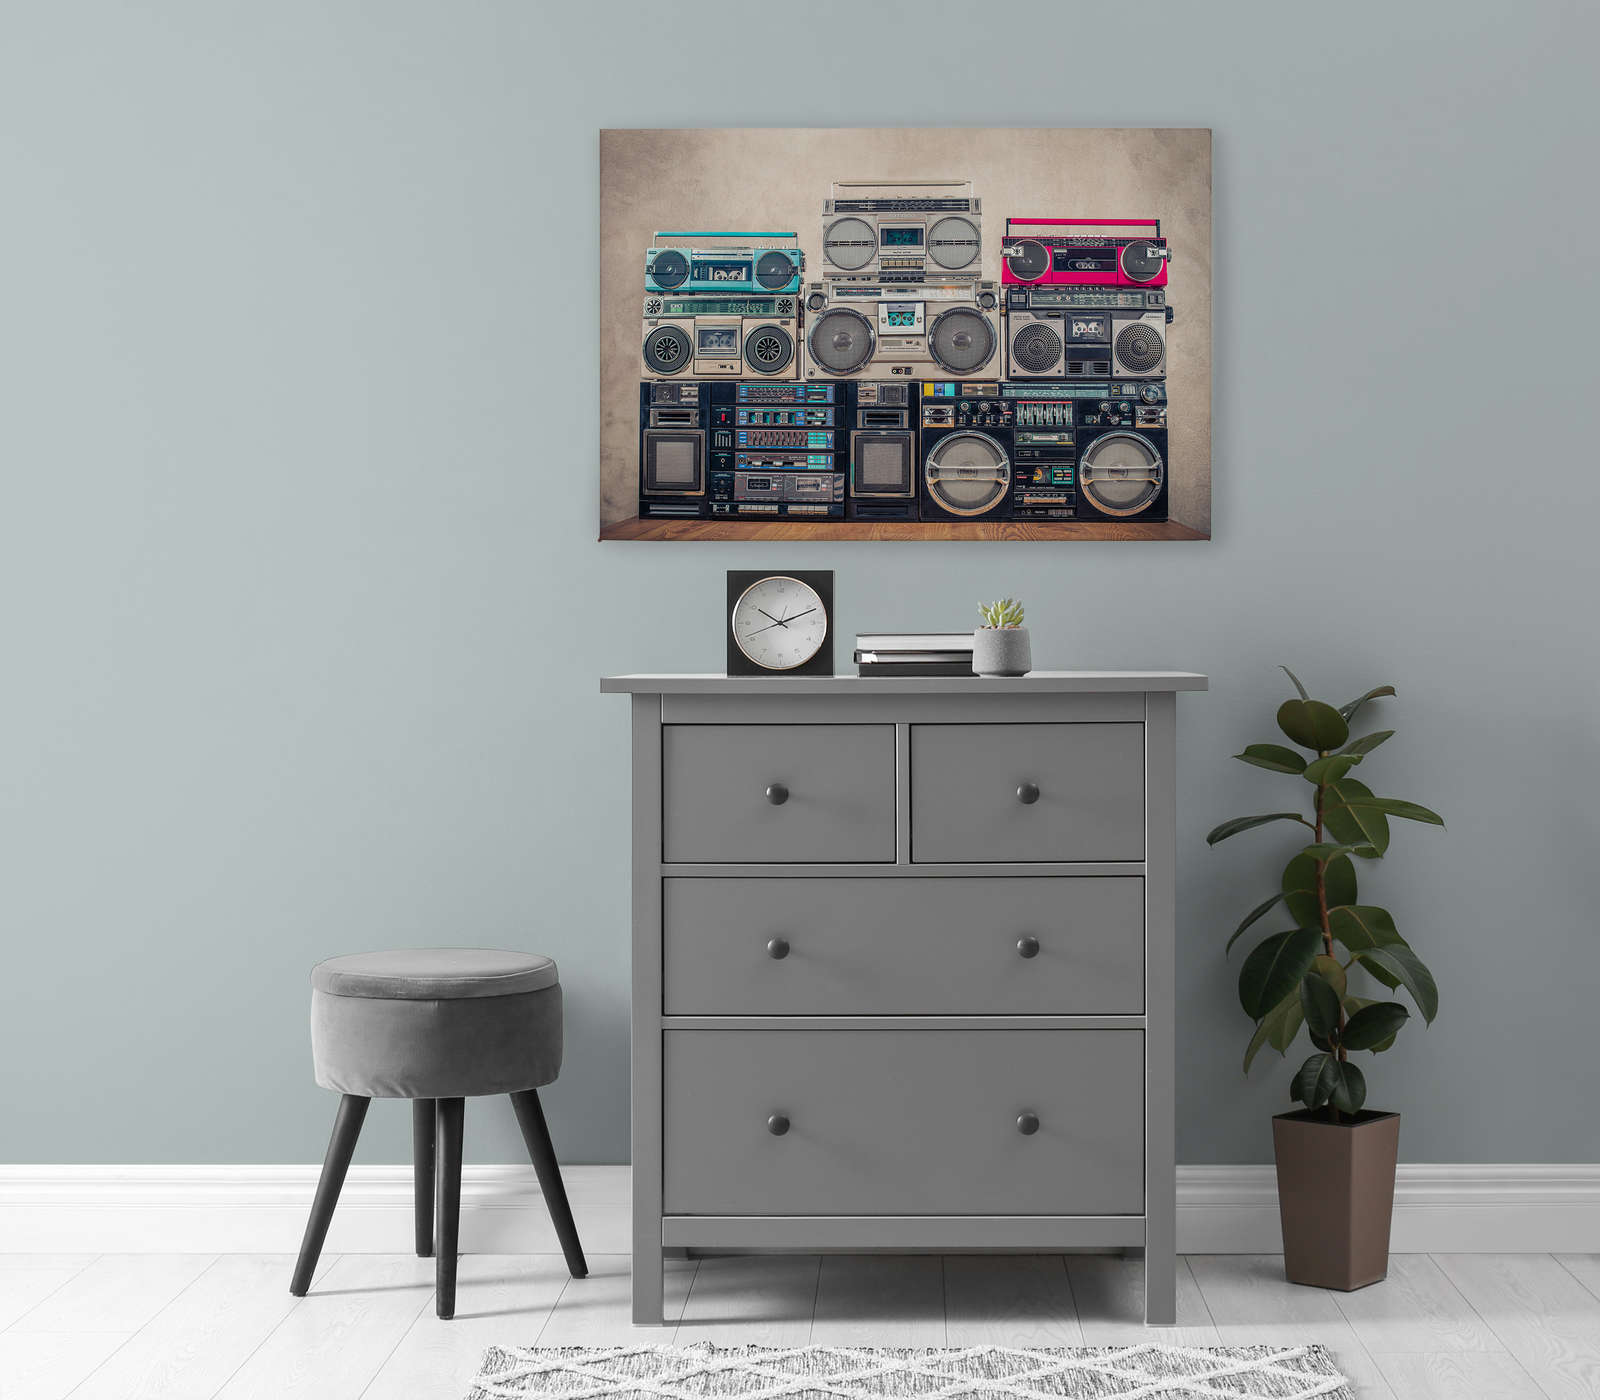             Leinwandbild Radios auf Holztisch vor Wand – 0,90 m x 0,60 m
        